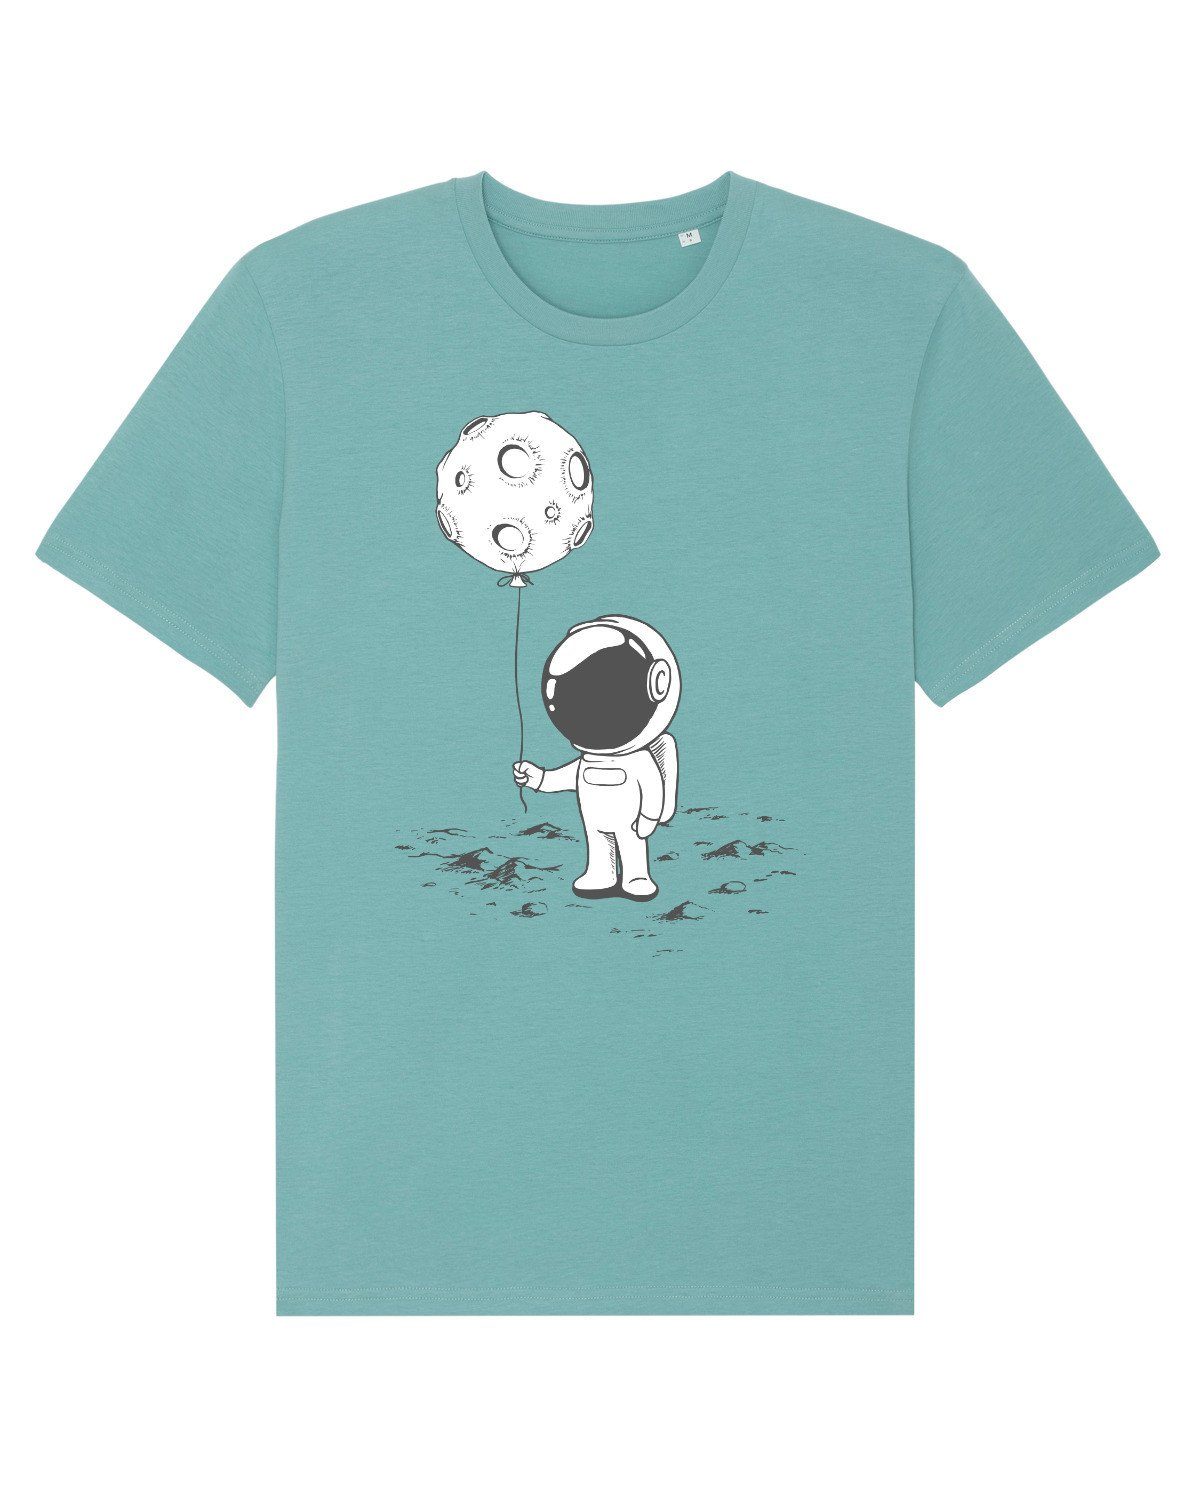 Apparel (1-tlg) Astronaut Luftballon mit wat? Kleiner schwarz Print-Shirt